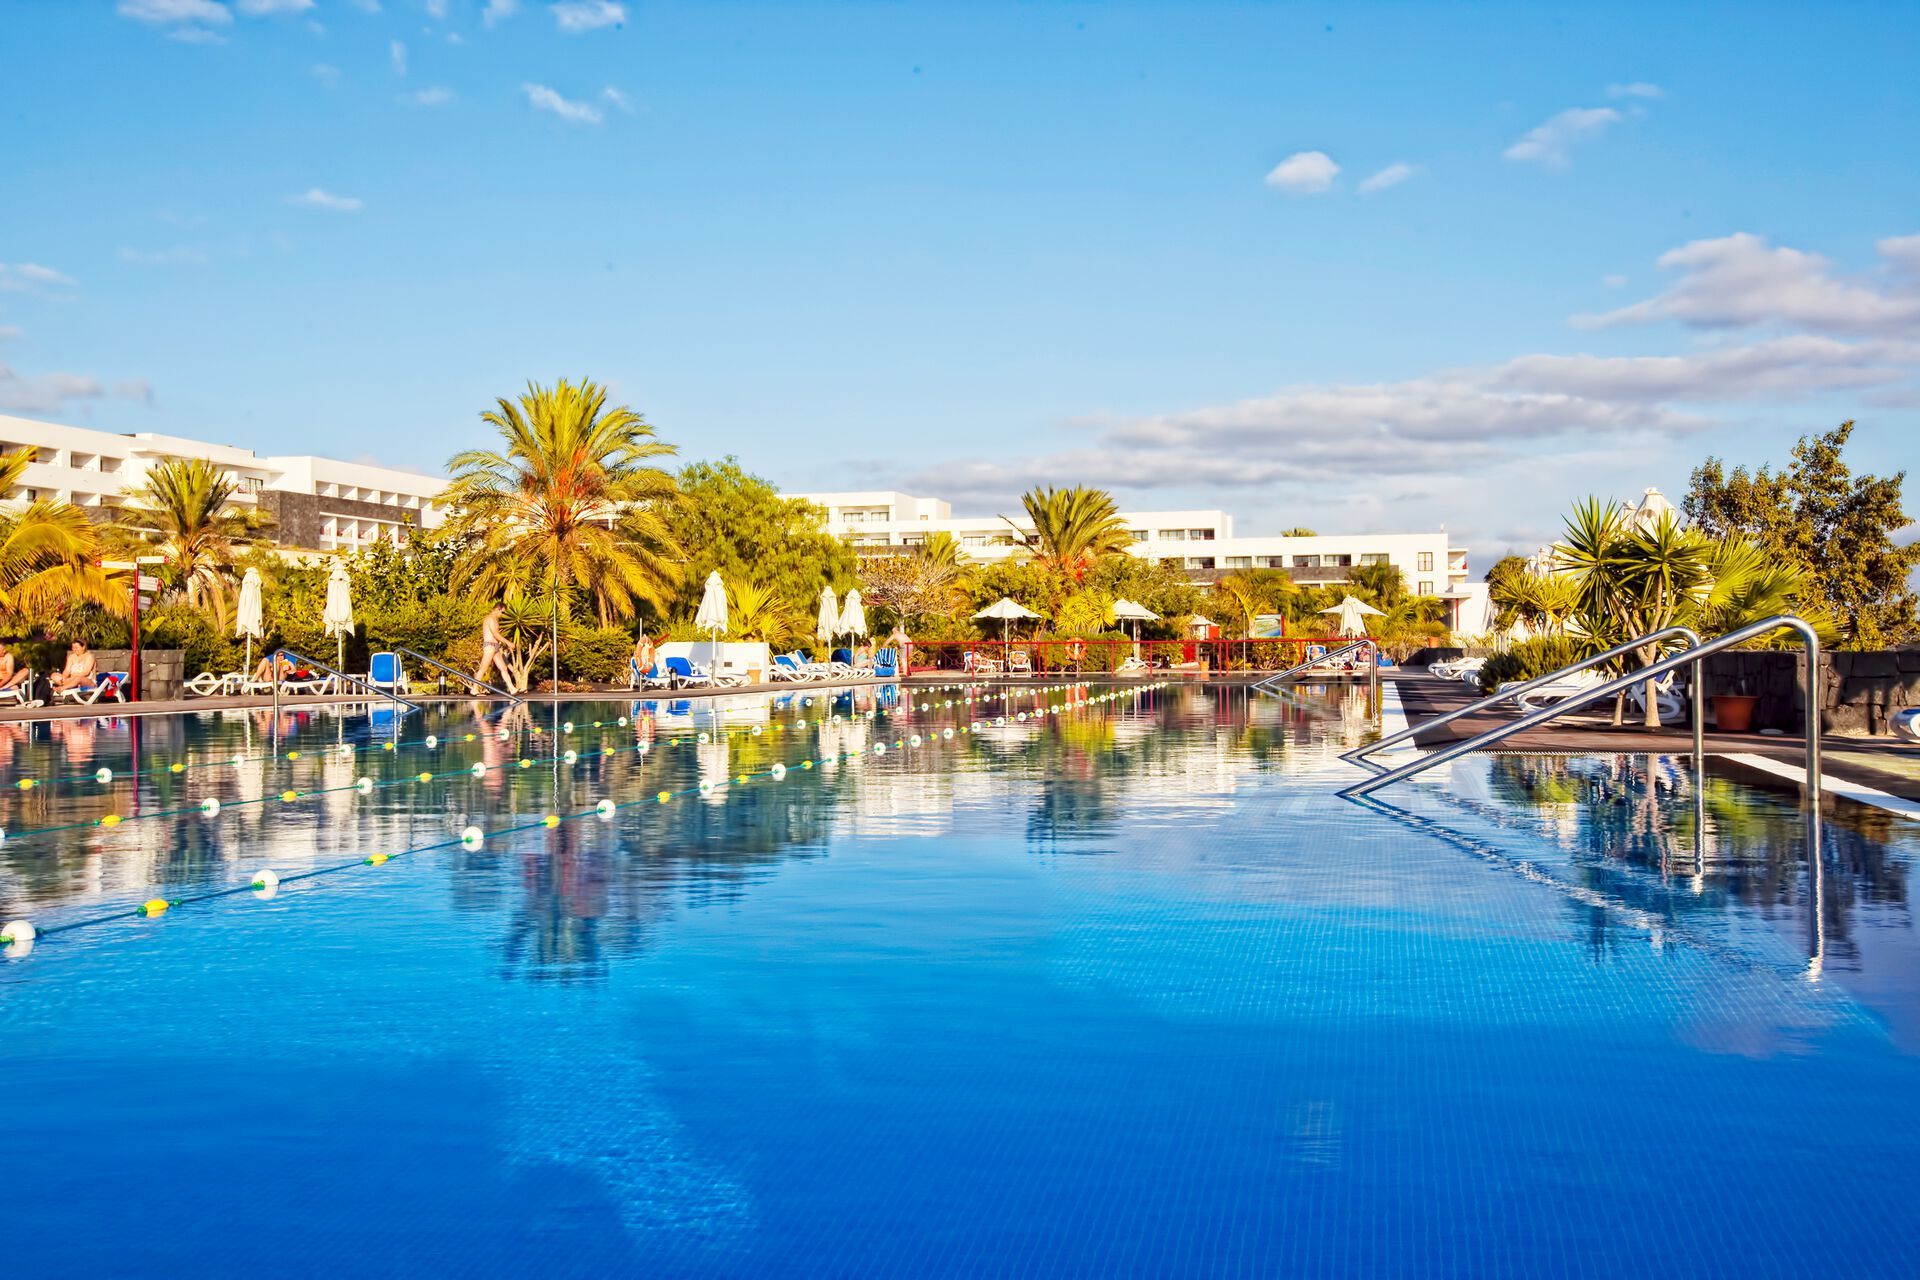 Canaries - Lanzarote - Espagne - Hotel Costa Calero 4*